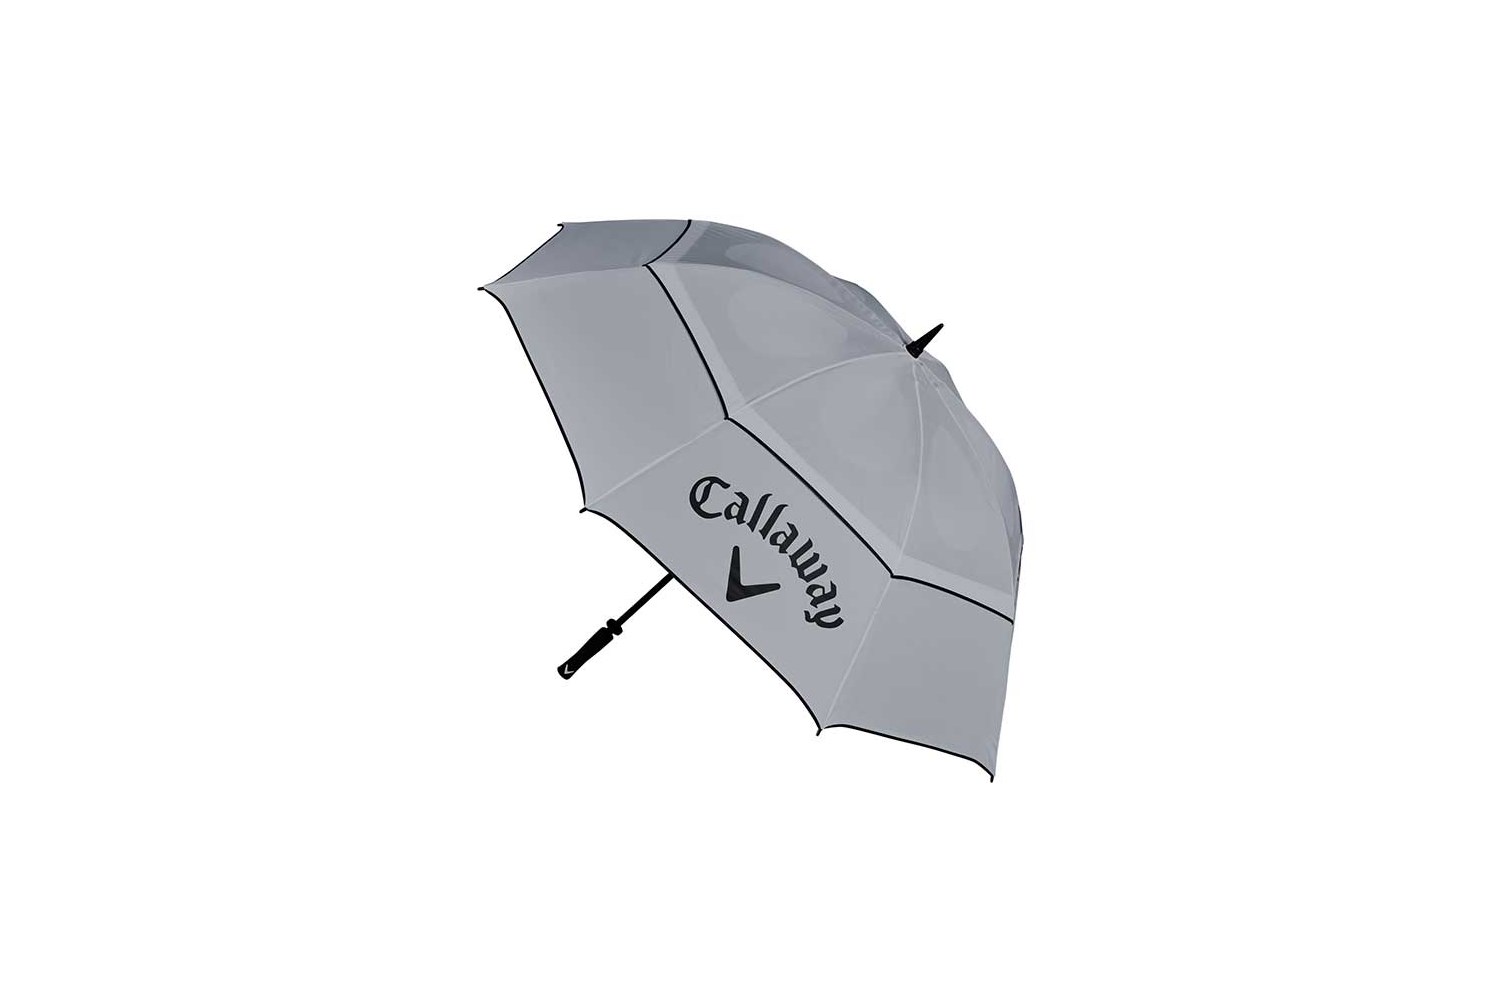 Callaway Shield 64" Umbrella Grey/Black